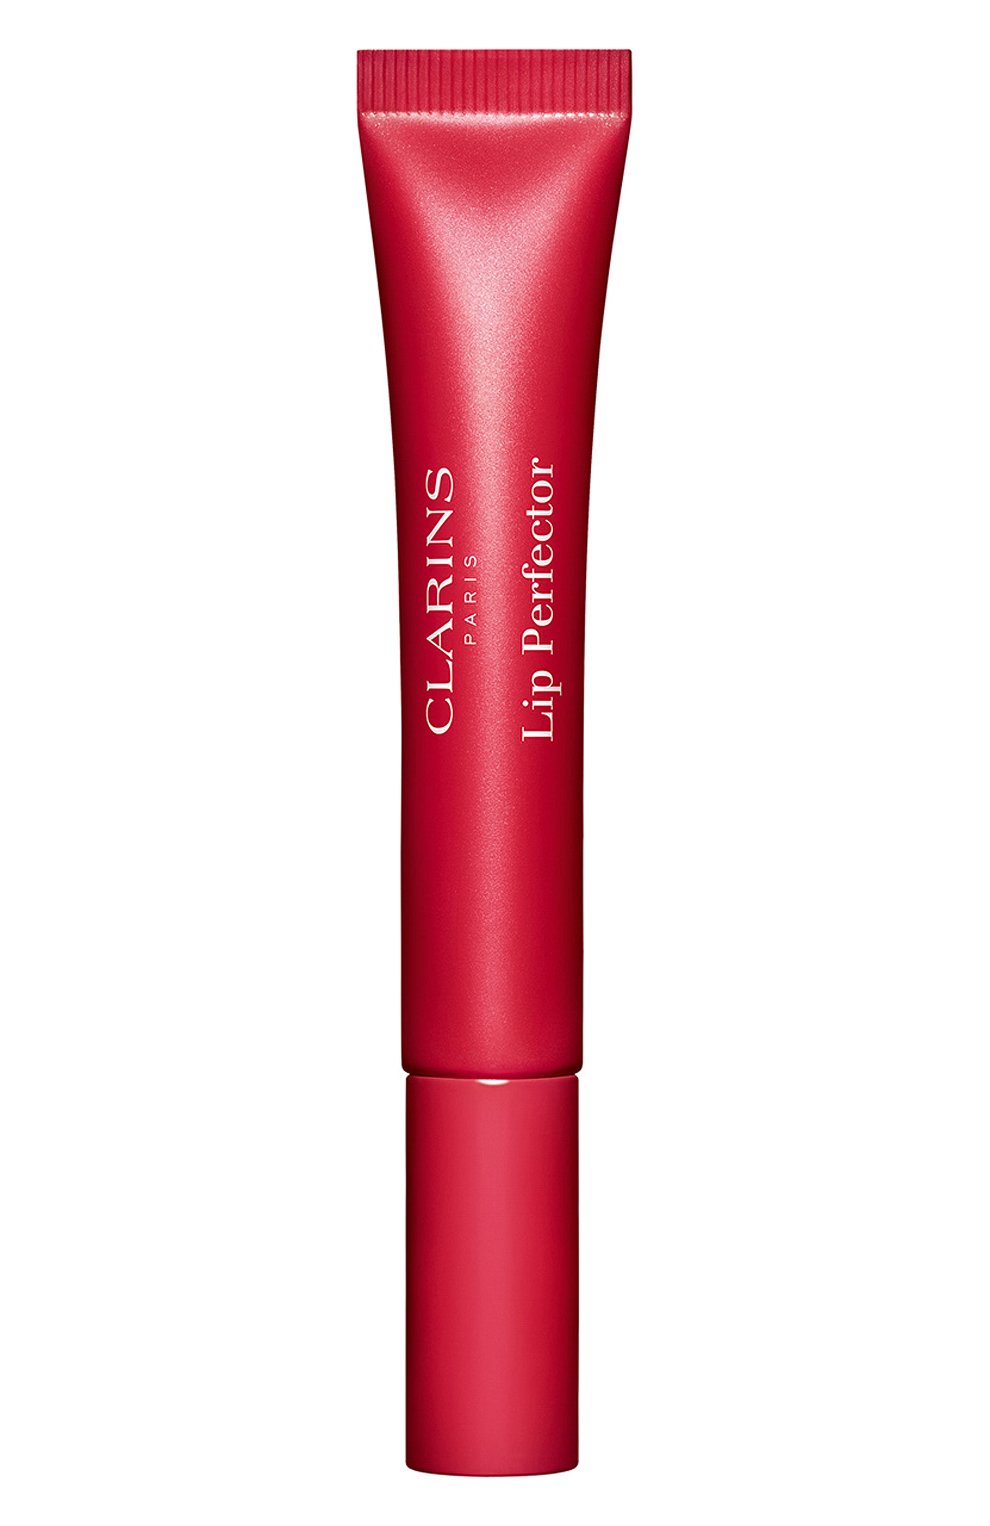 Блеск для губ lip perfector, отт енок 24 fuchsia glow (12ml) CLARINS  цвета, арт. 80098706 | Фото 1 (Обьем косметики: 100ml; Финишное покрытие: Блестящий)